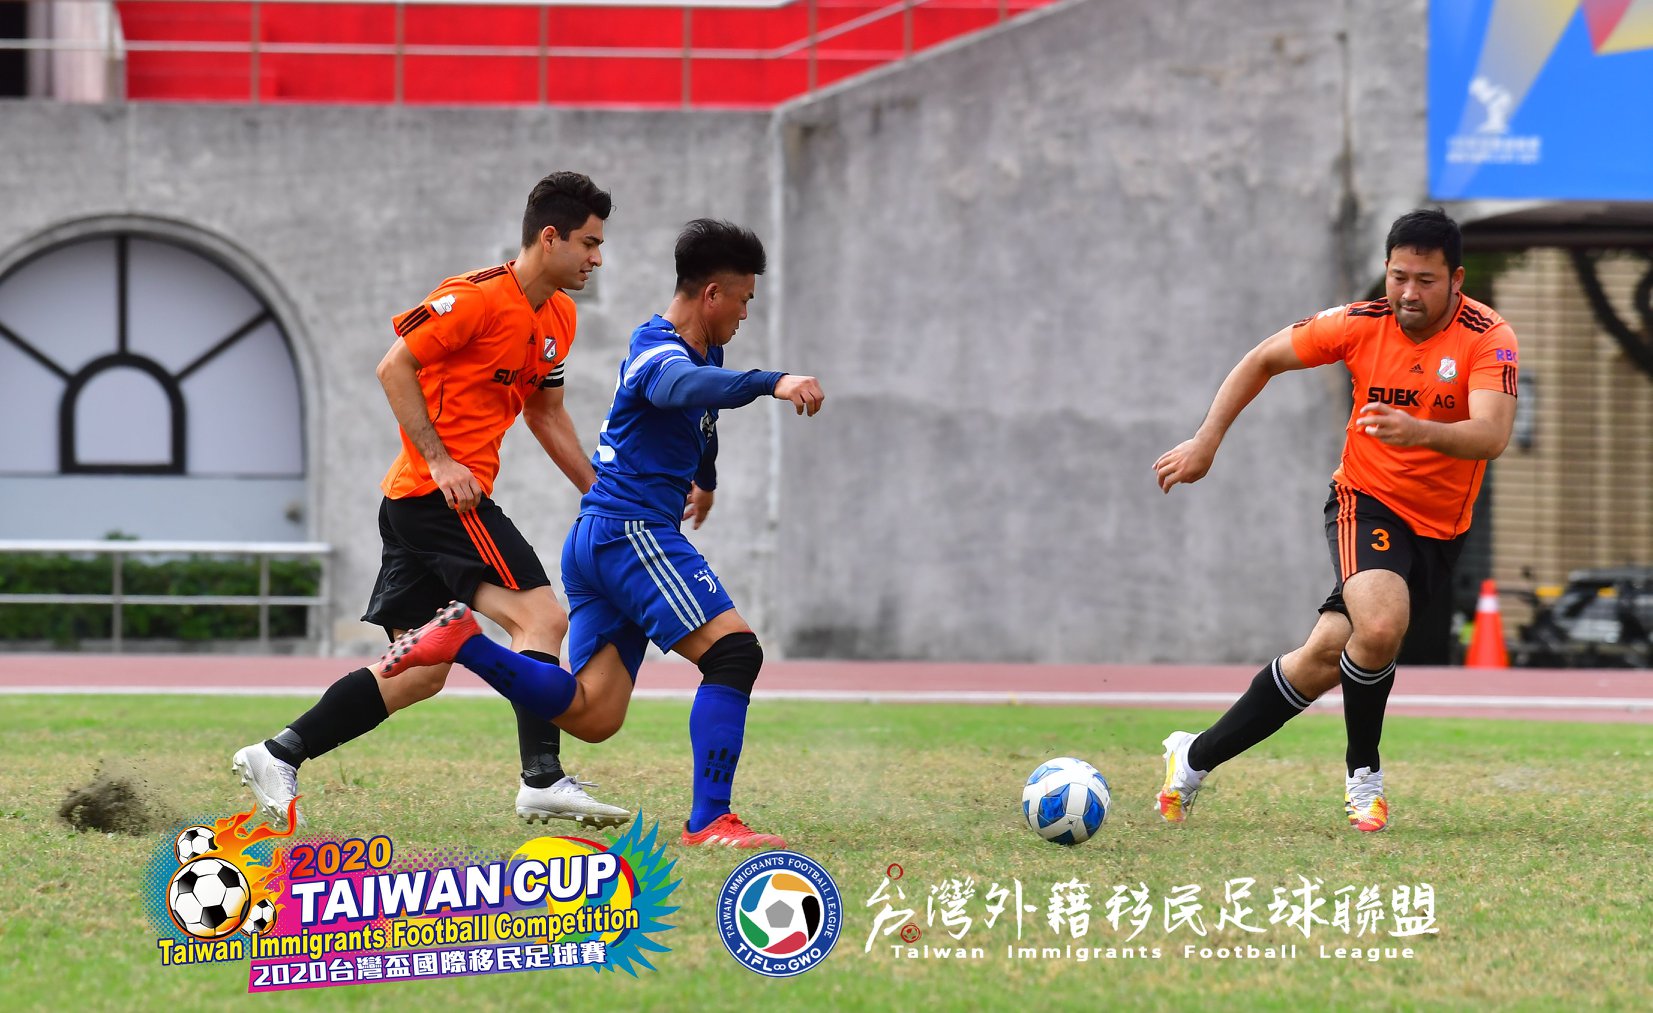 Ảnh chụp trận đấu trong khuôn khổ Giải bóng đá Cup Đài Loan 2020。(Nguồn ảnh: GWO)